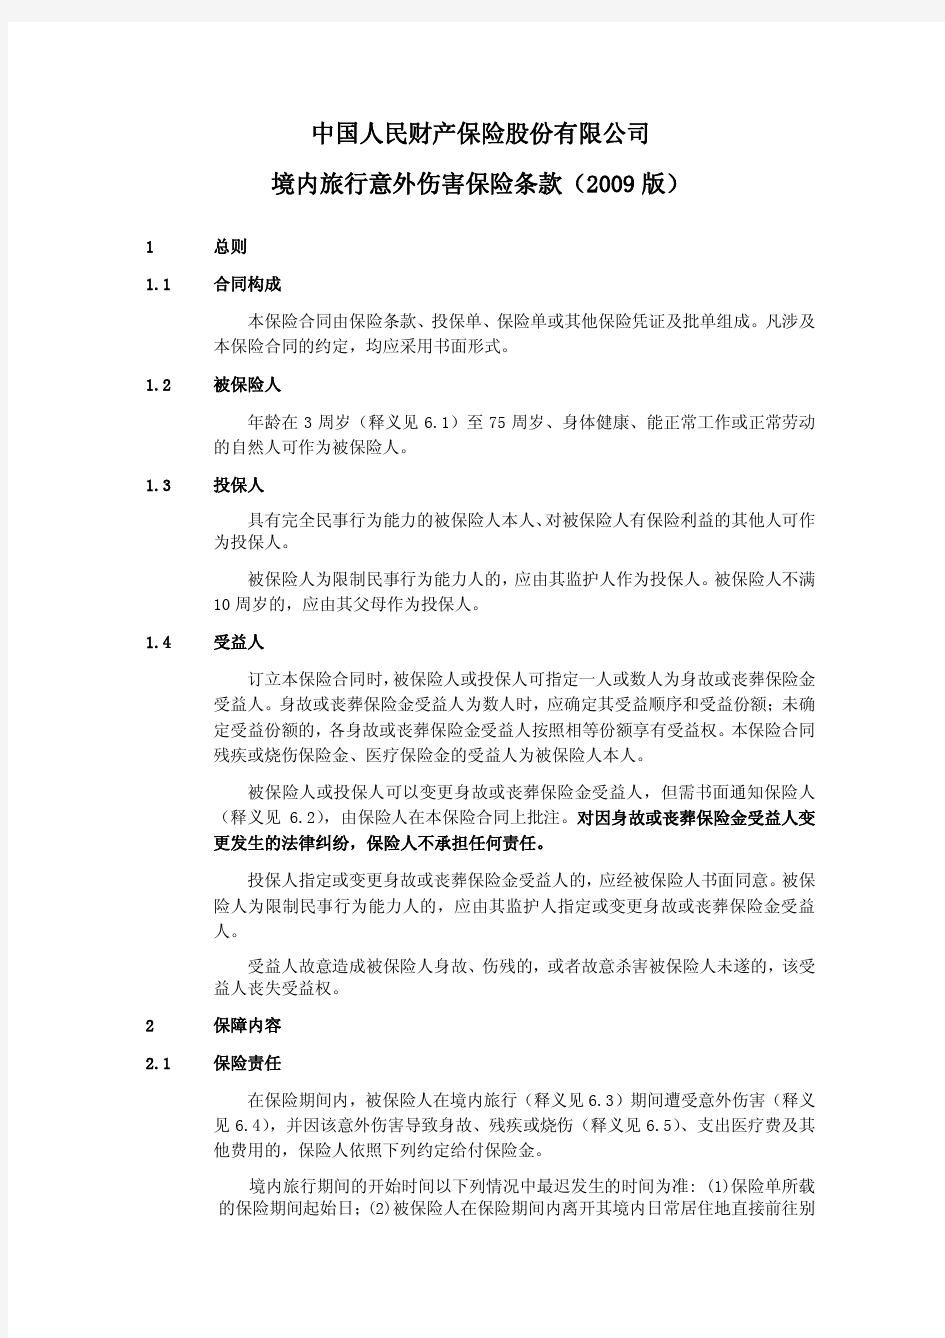 中国人民财产保险股份有限公司境内旅行意外伤害保险条款(2009版)